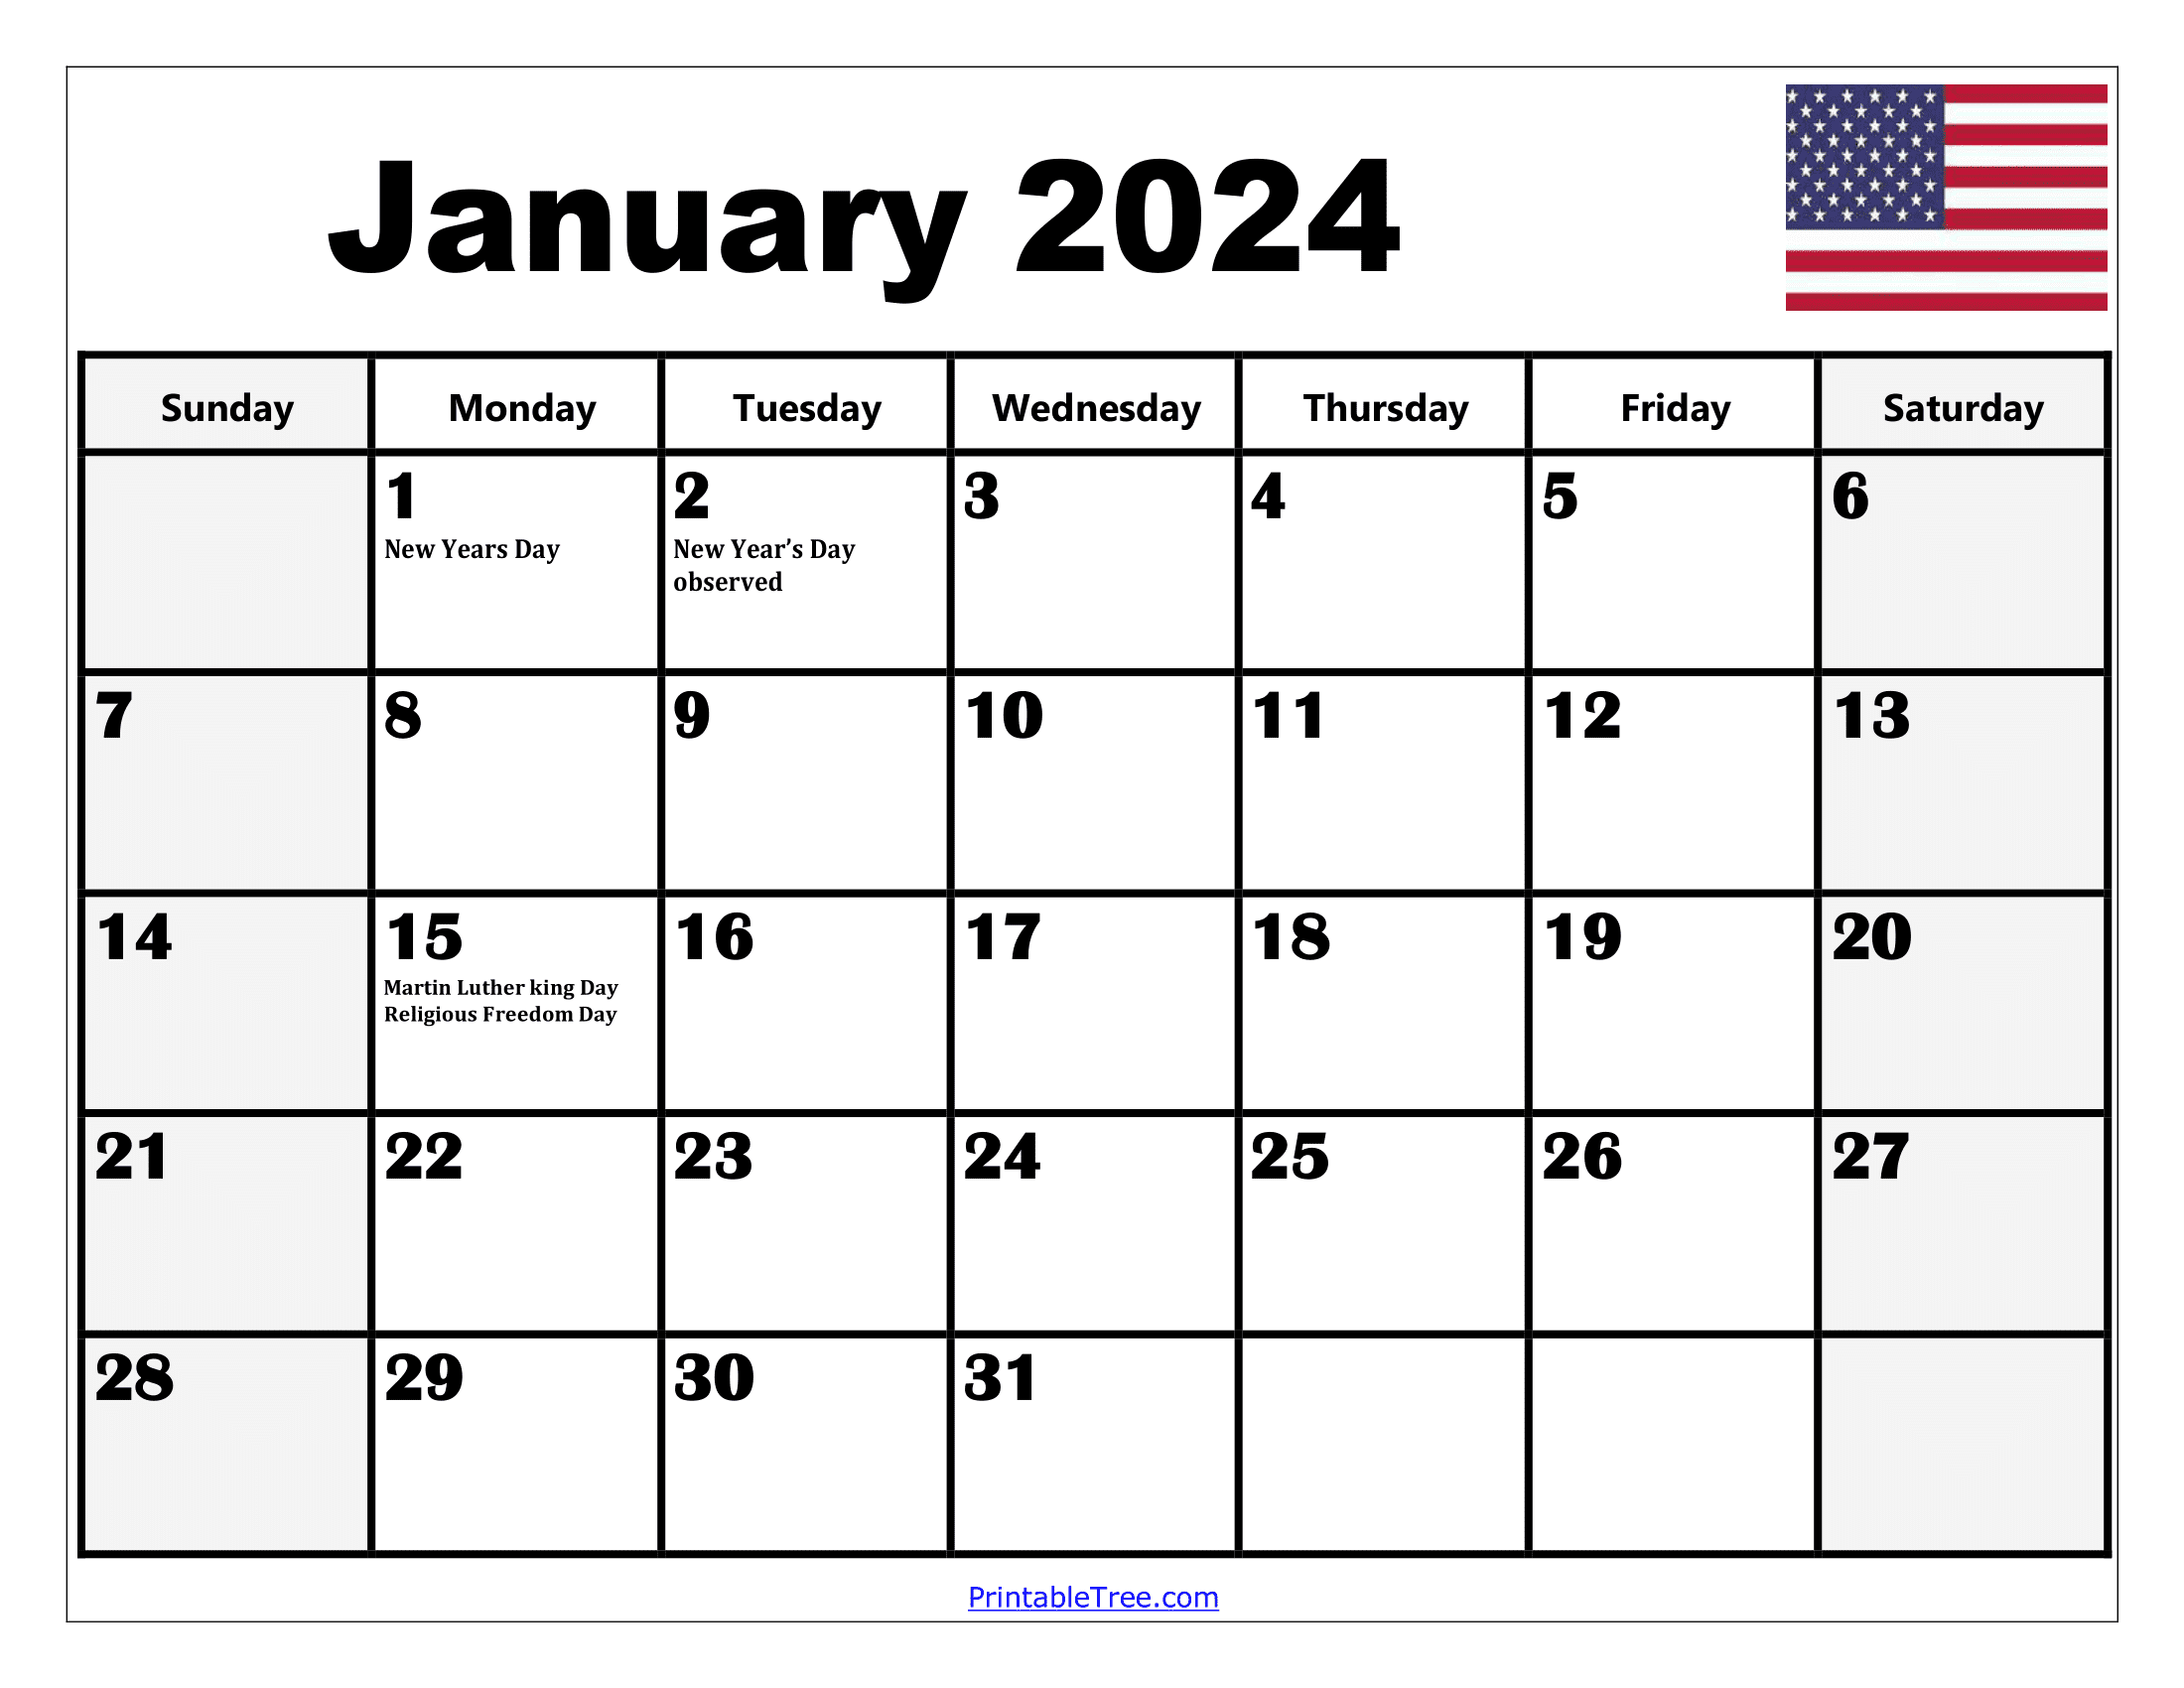 2024 Holiday Calendar Days Free Download Nov 2024 Calendar - Free Printable 2024 Calendar With Holidays Landscape